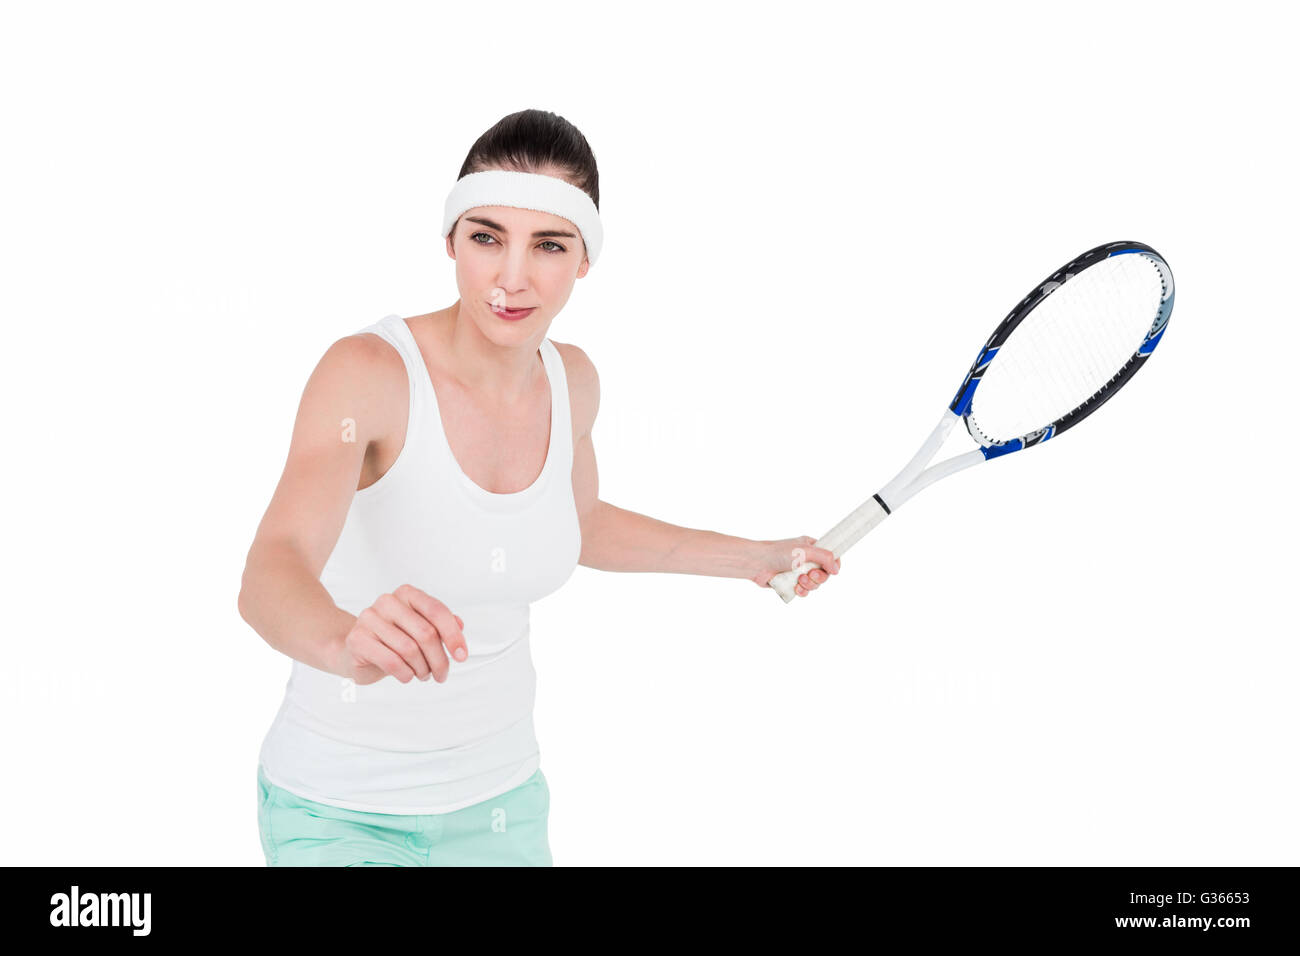 Athlète féminin jouant au tennis Banque D'Images